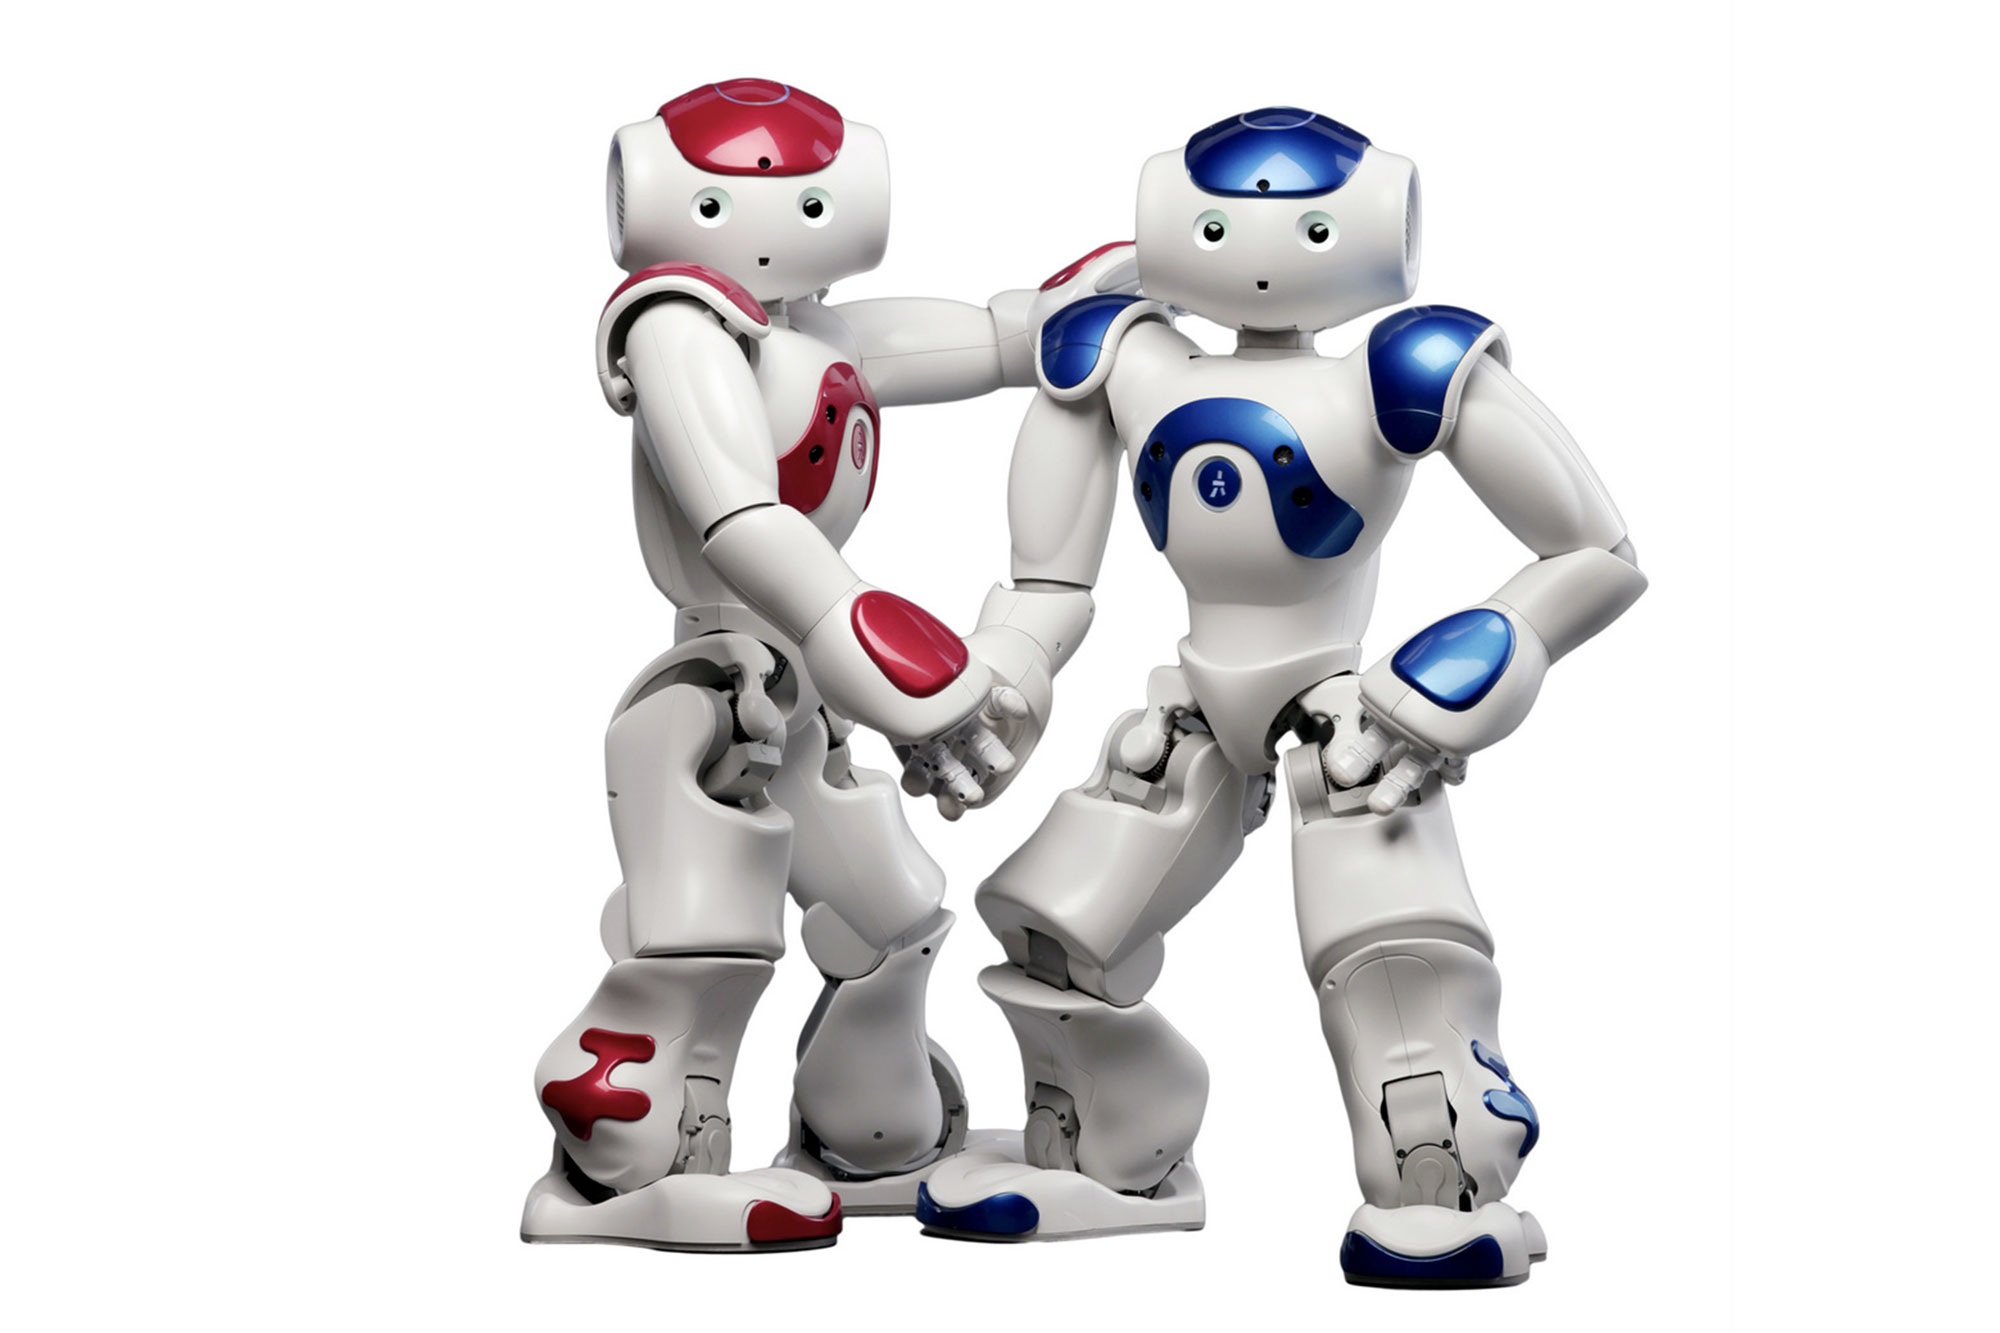 日本サード パーティとシャープドキュメント21ヨシダ ロボットアプリ Robo Touch For 介護 を使った介護施設向けコミュニケーションロボットソリューションの販売を開始 Jtp 日本サード パーティ株式会社